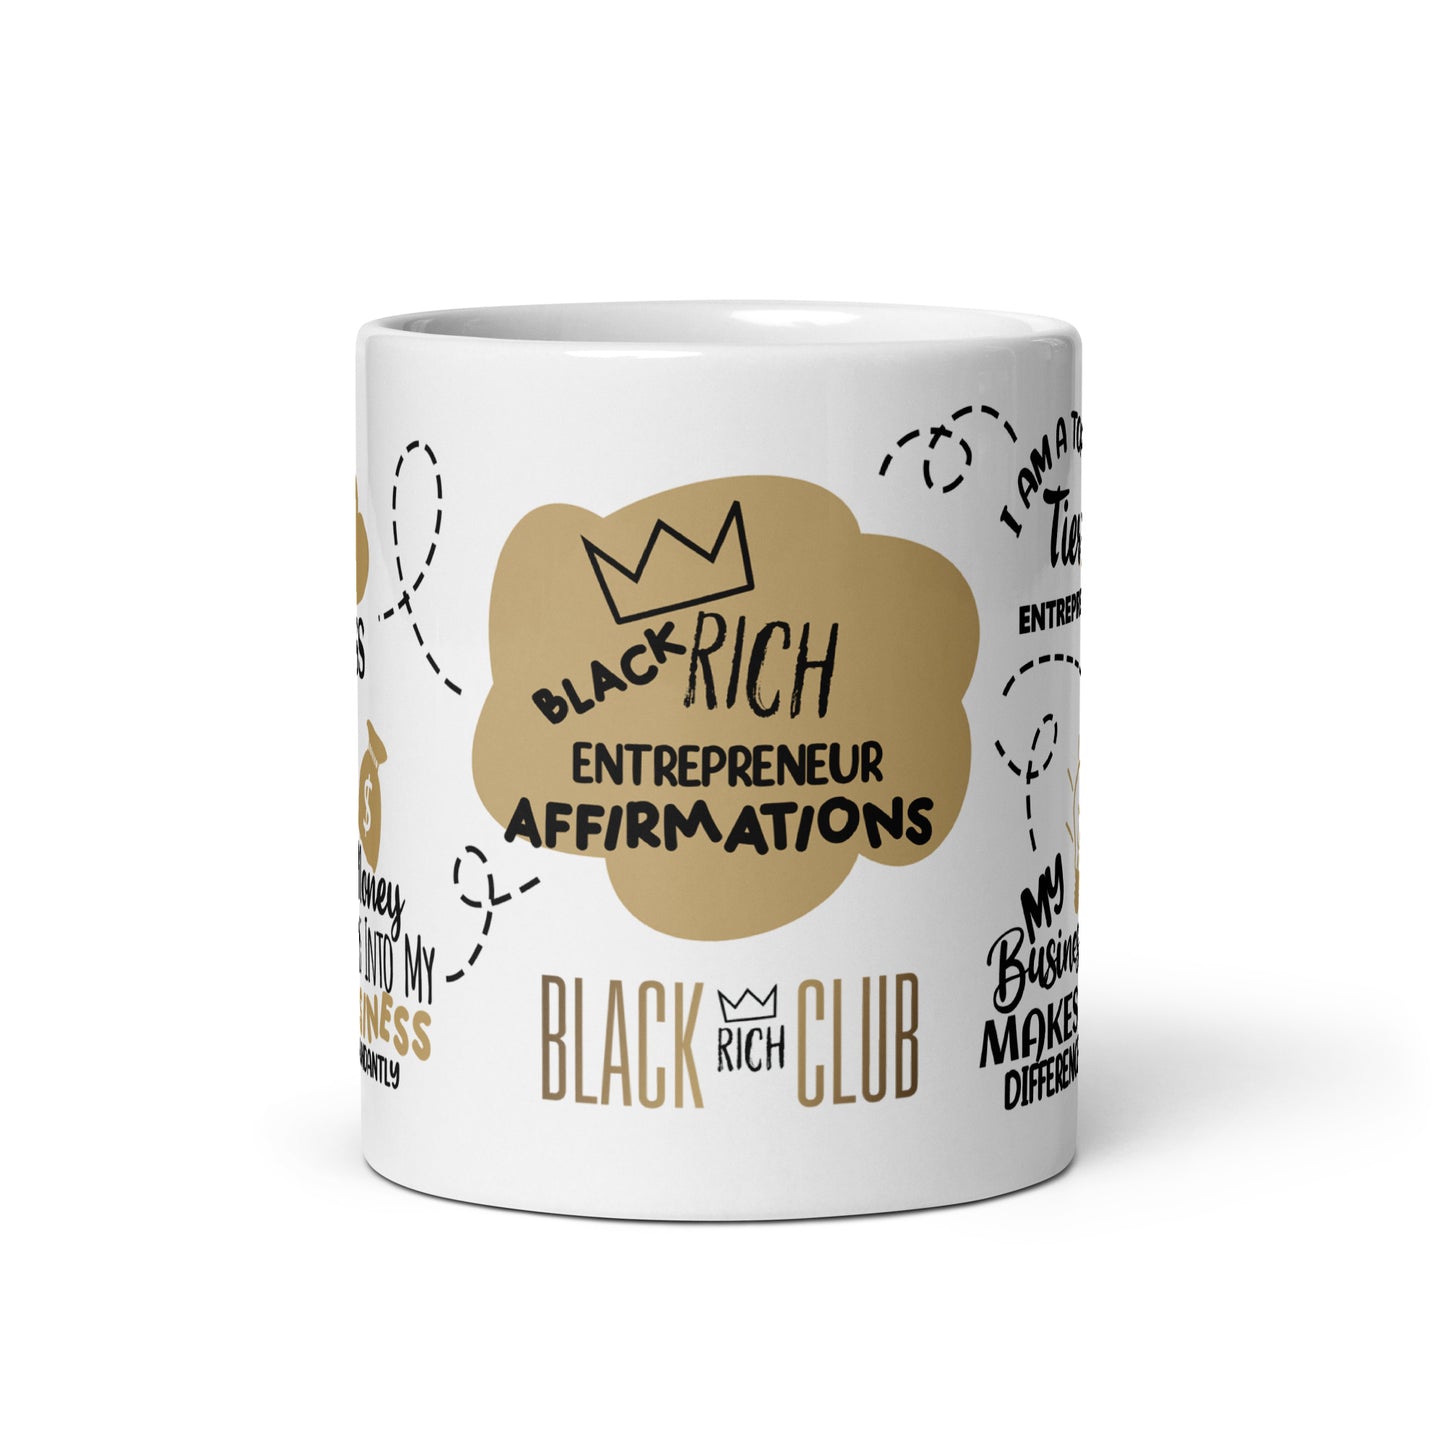 Black Rich Club "A Entrepreneurs Affirmations" Mug